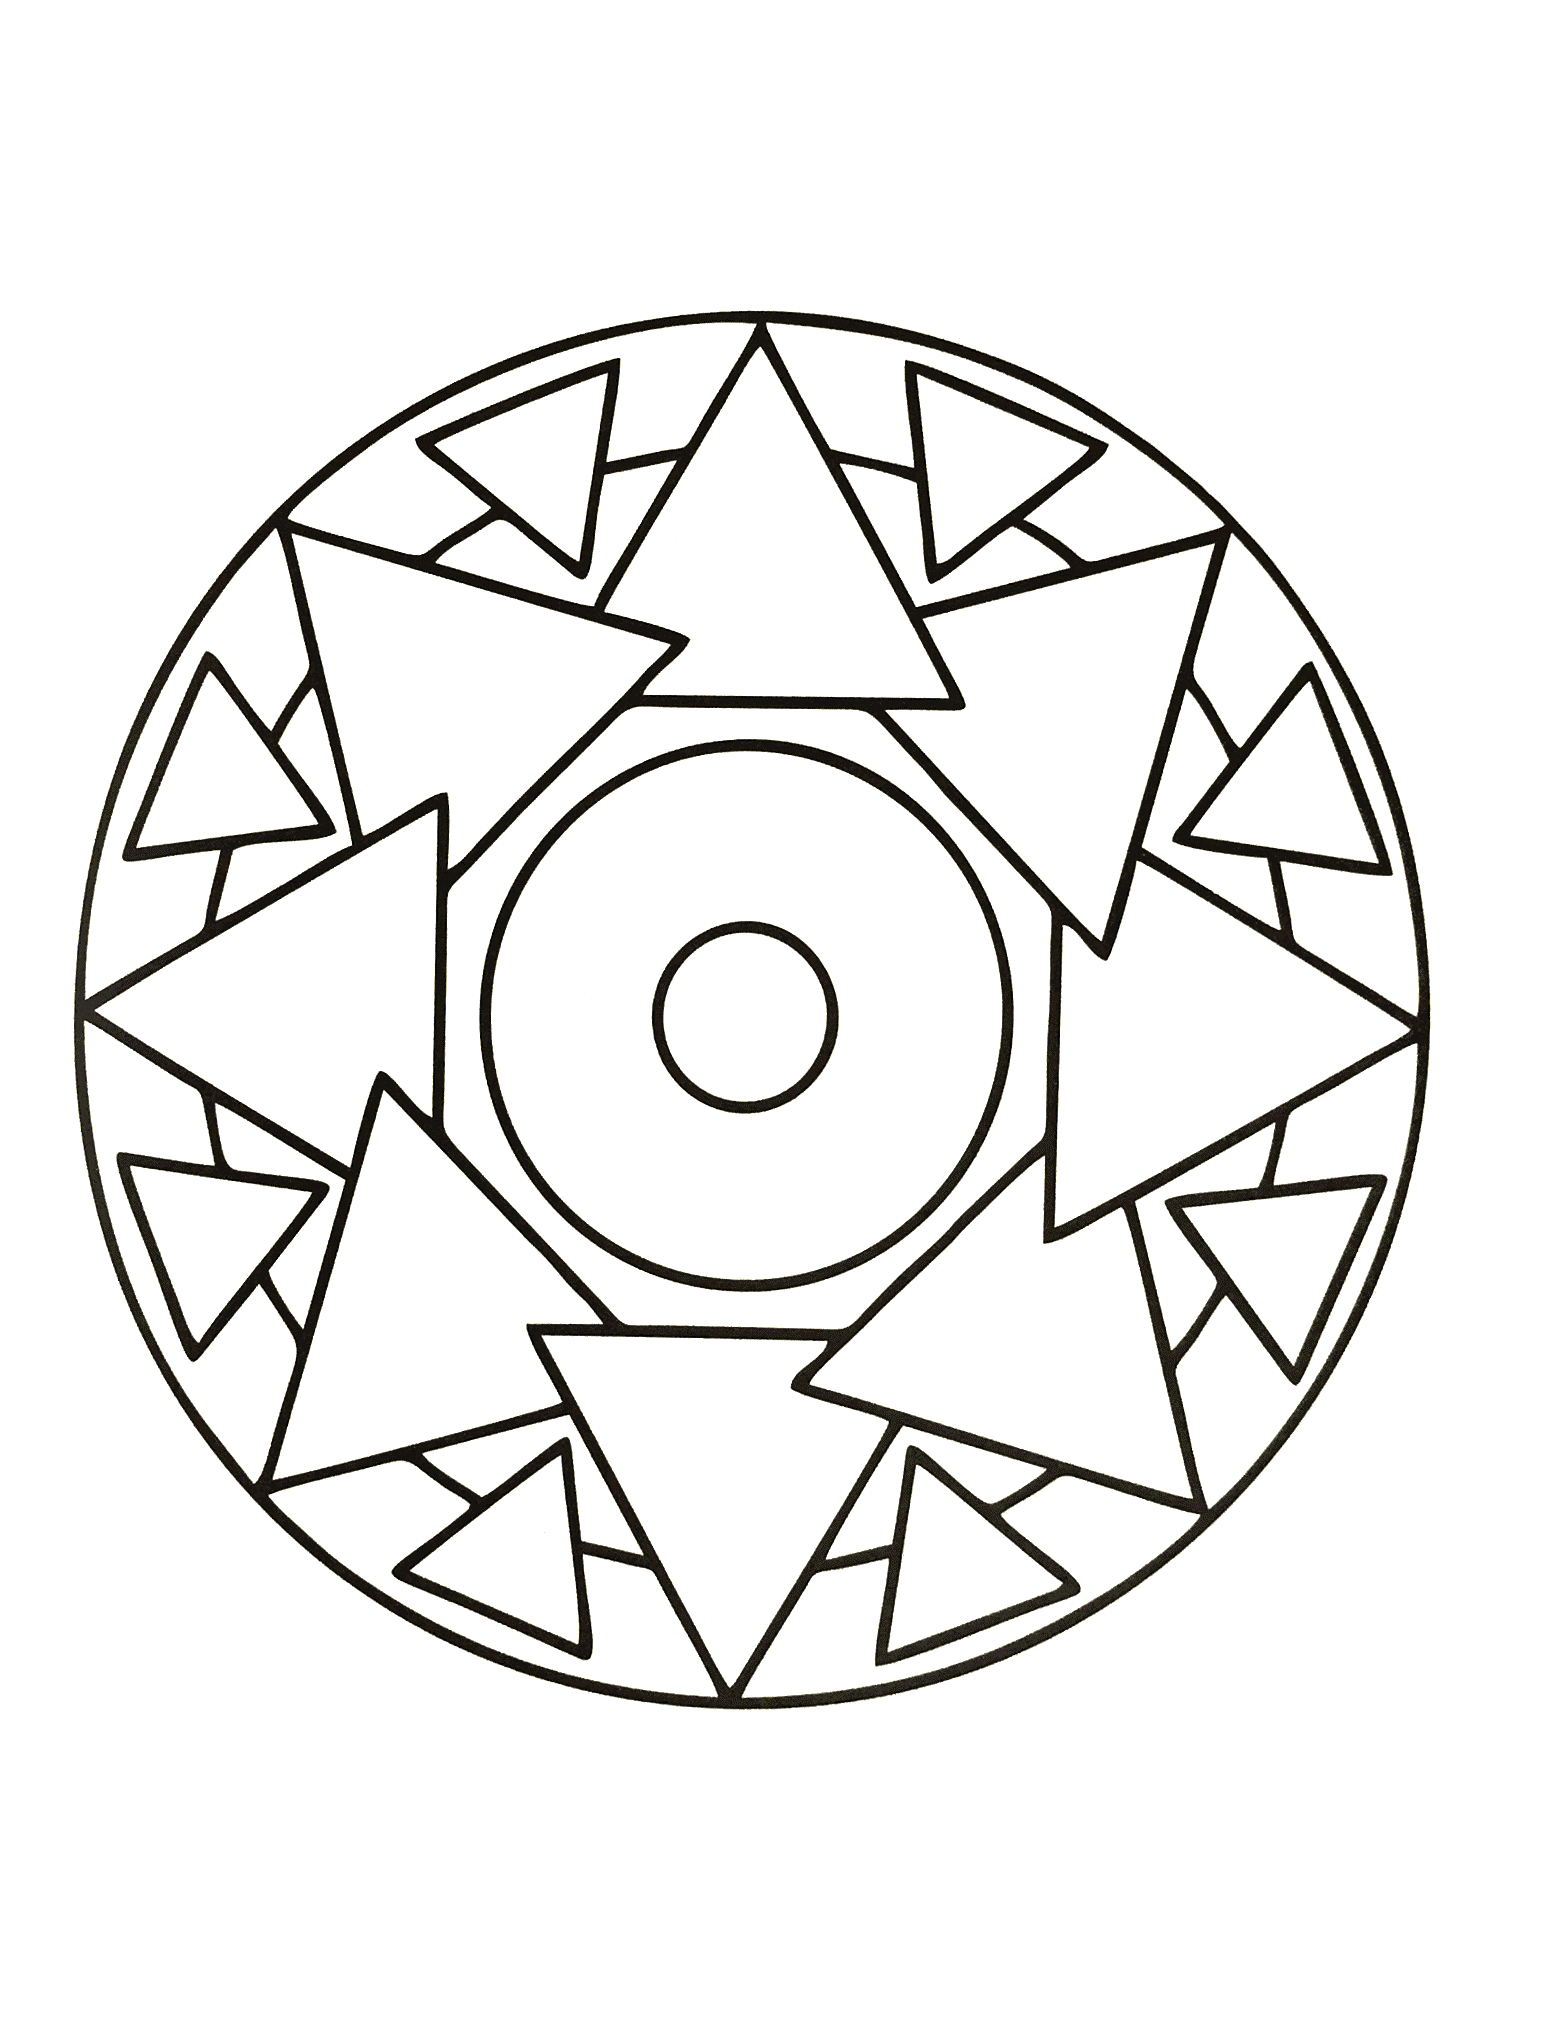 Magnifique mandala avec une succession de triangles ainsi qu'un joli cercle au centre. Assez simple à colorier.